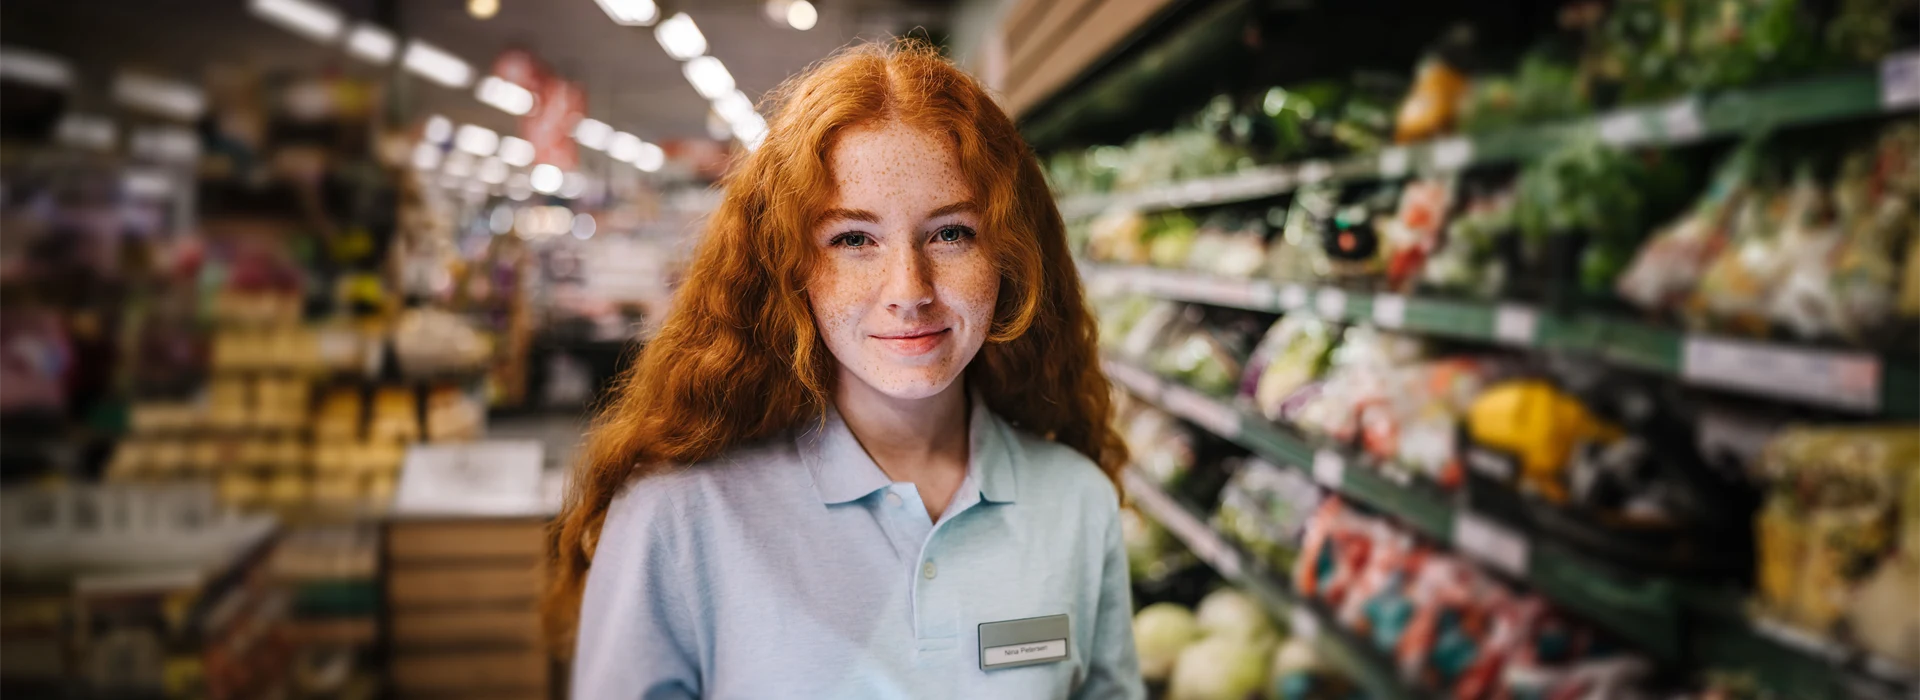 Porträtt av ung kvinna som jobbar i butik